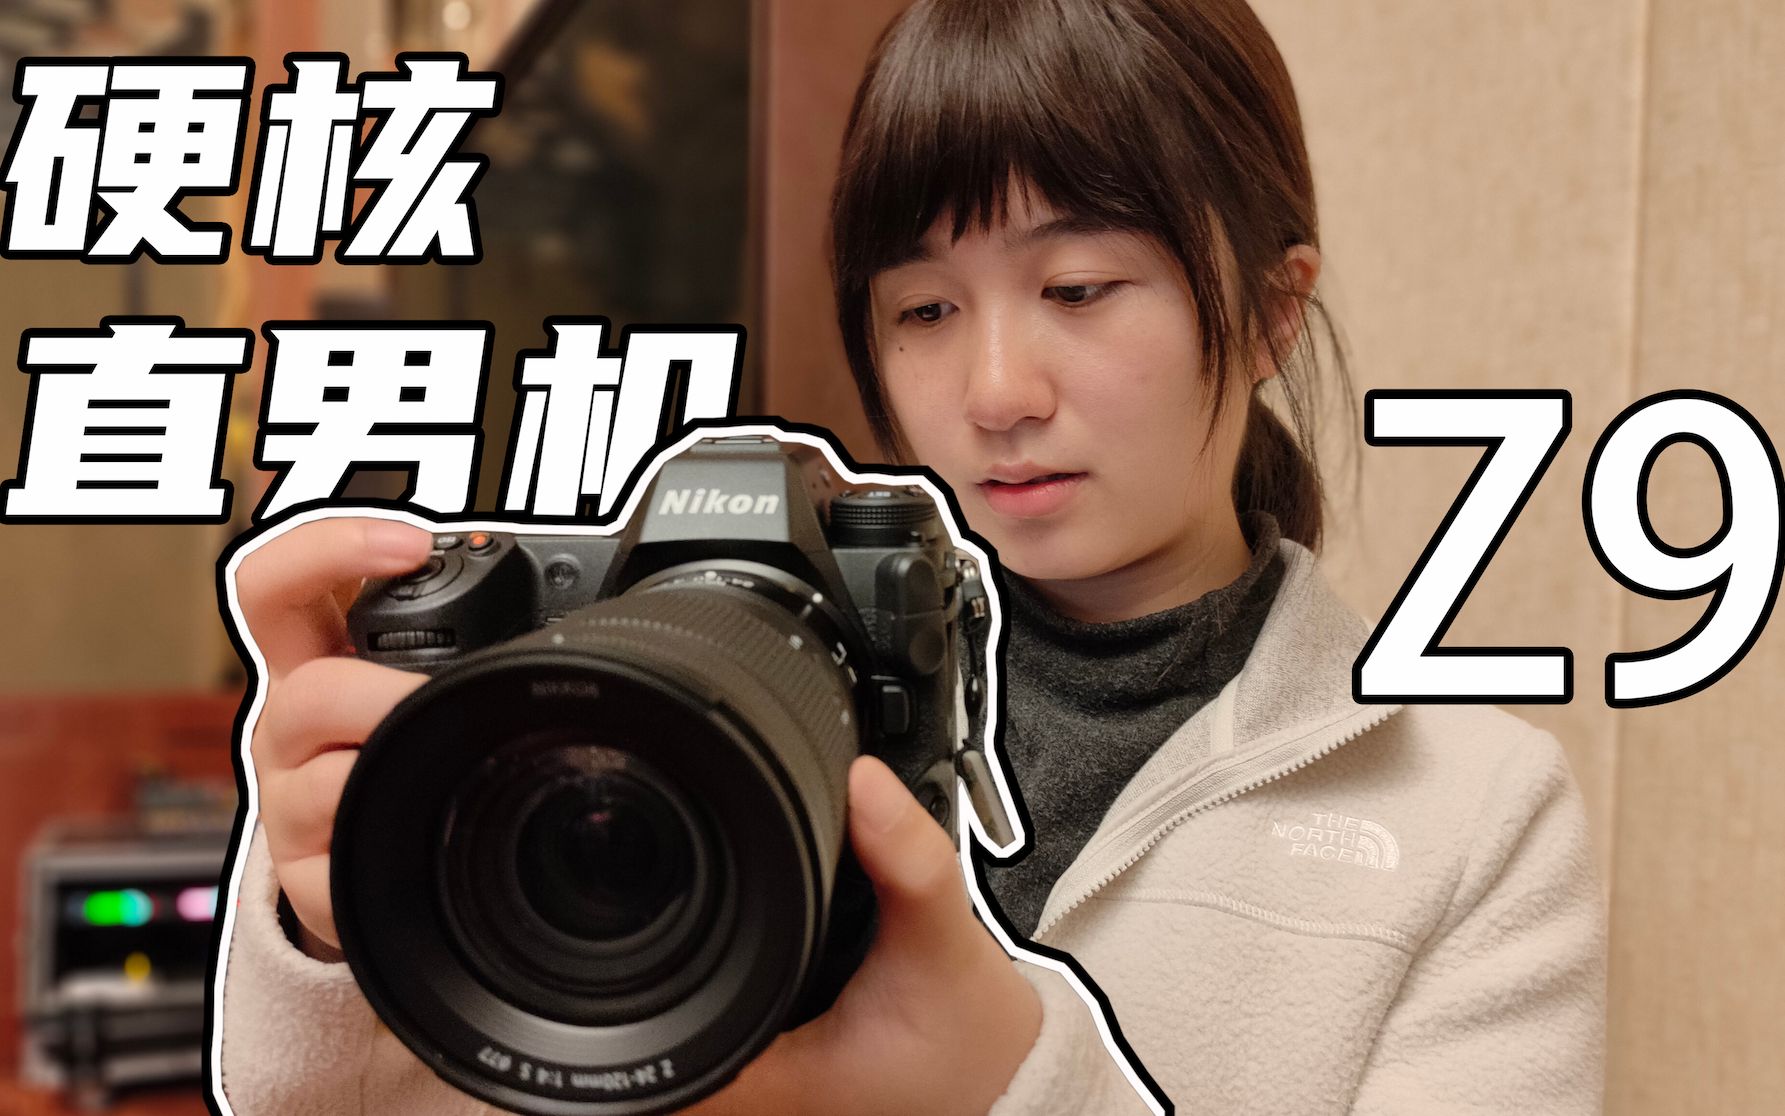 尼康Z9真机体验 8k视频、自动对焦以及高速连拍 // 影像狗